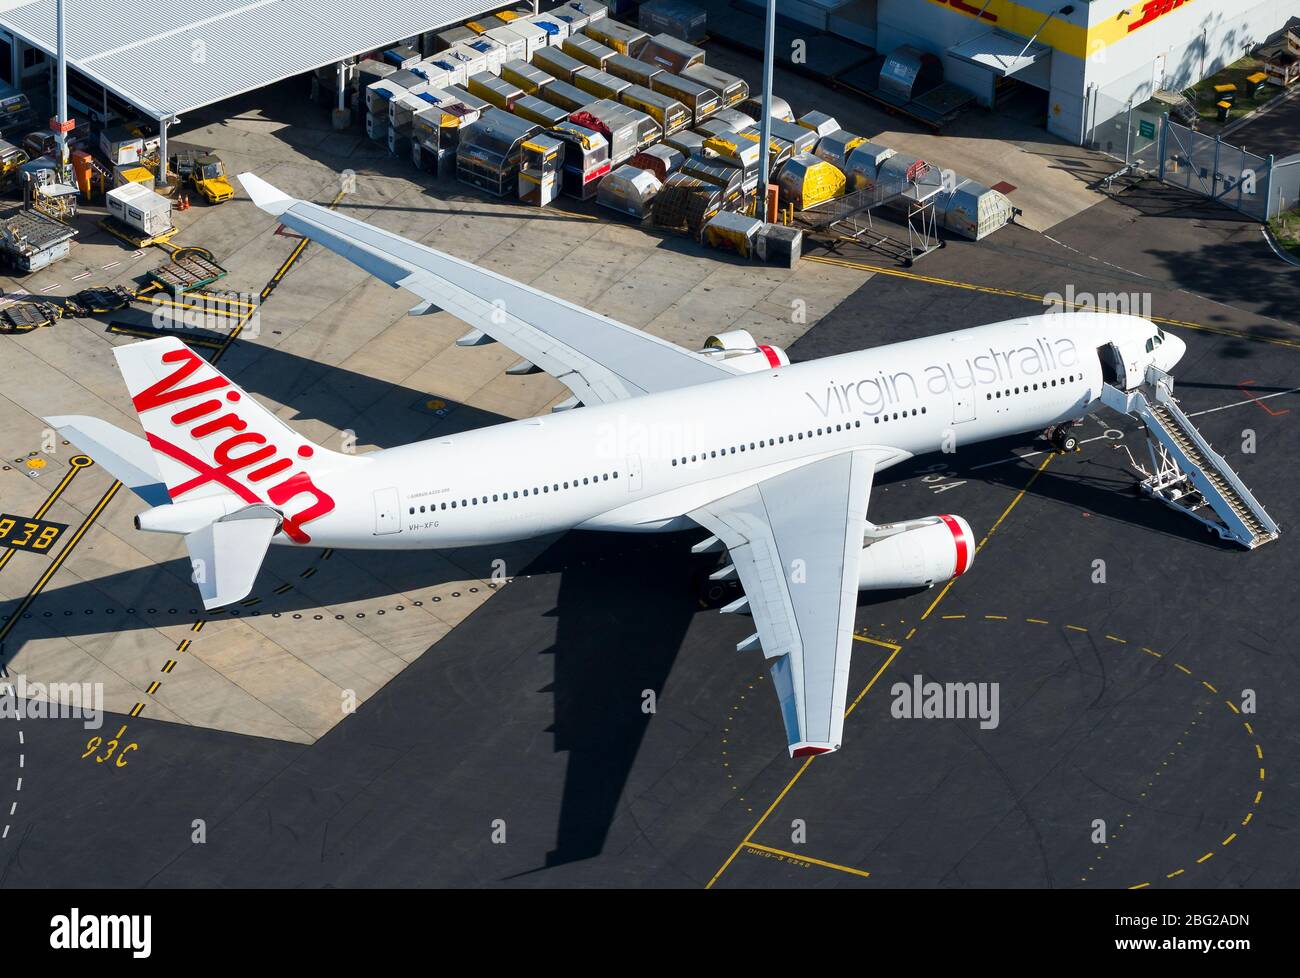 Virgin Australia Airlines Airbus A330 VH-XFG estacionado en el aeropuerto de Sydney. Compañía aérea que entra en la administración voluntaria durante el período de crisis. Foto de stock